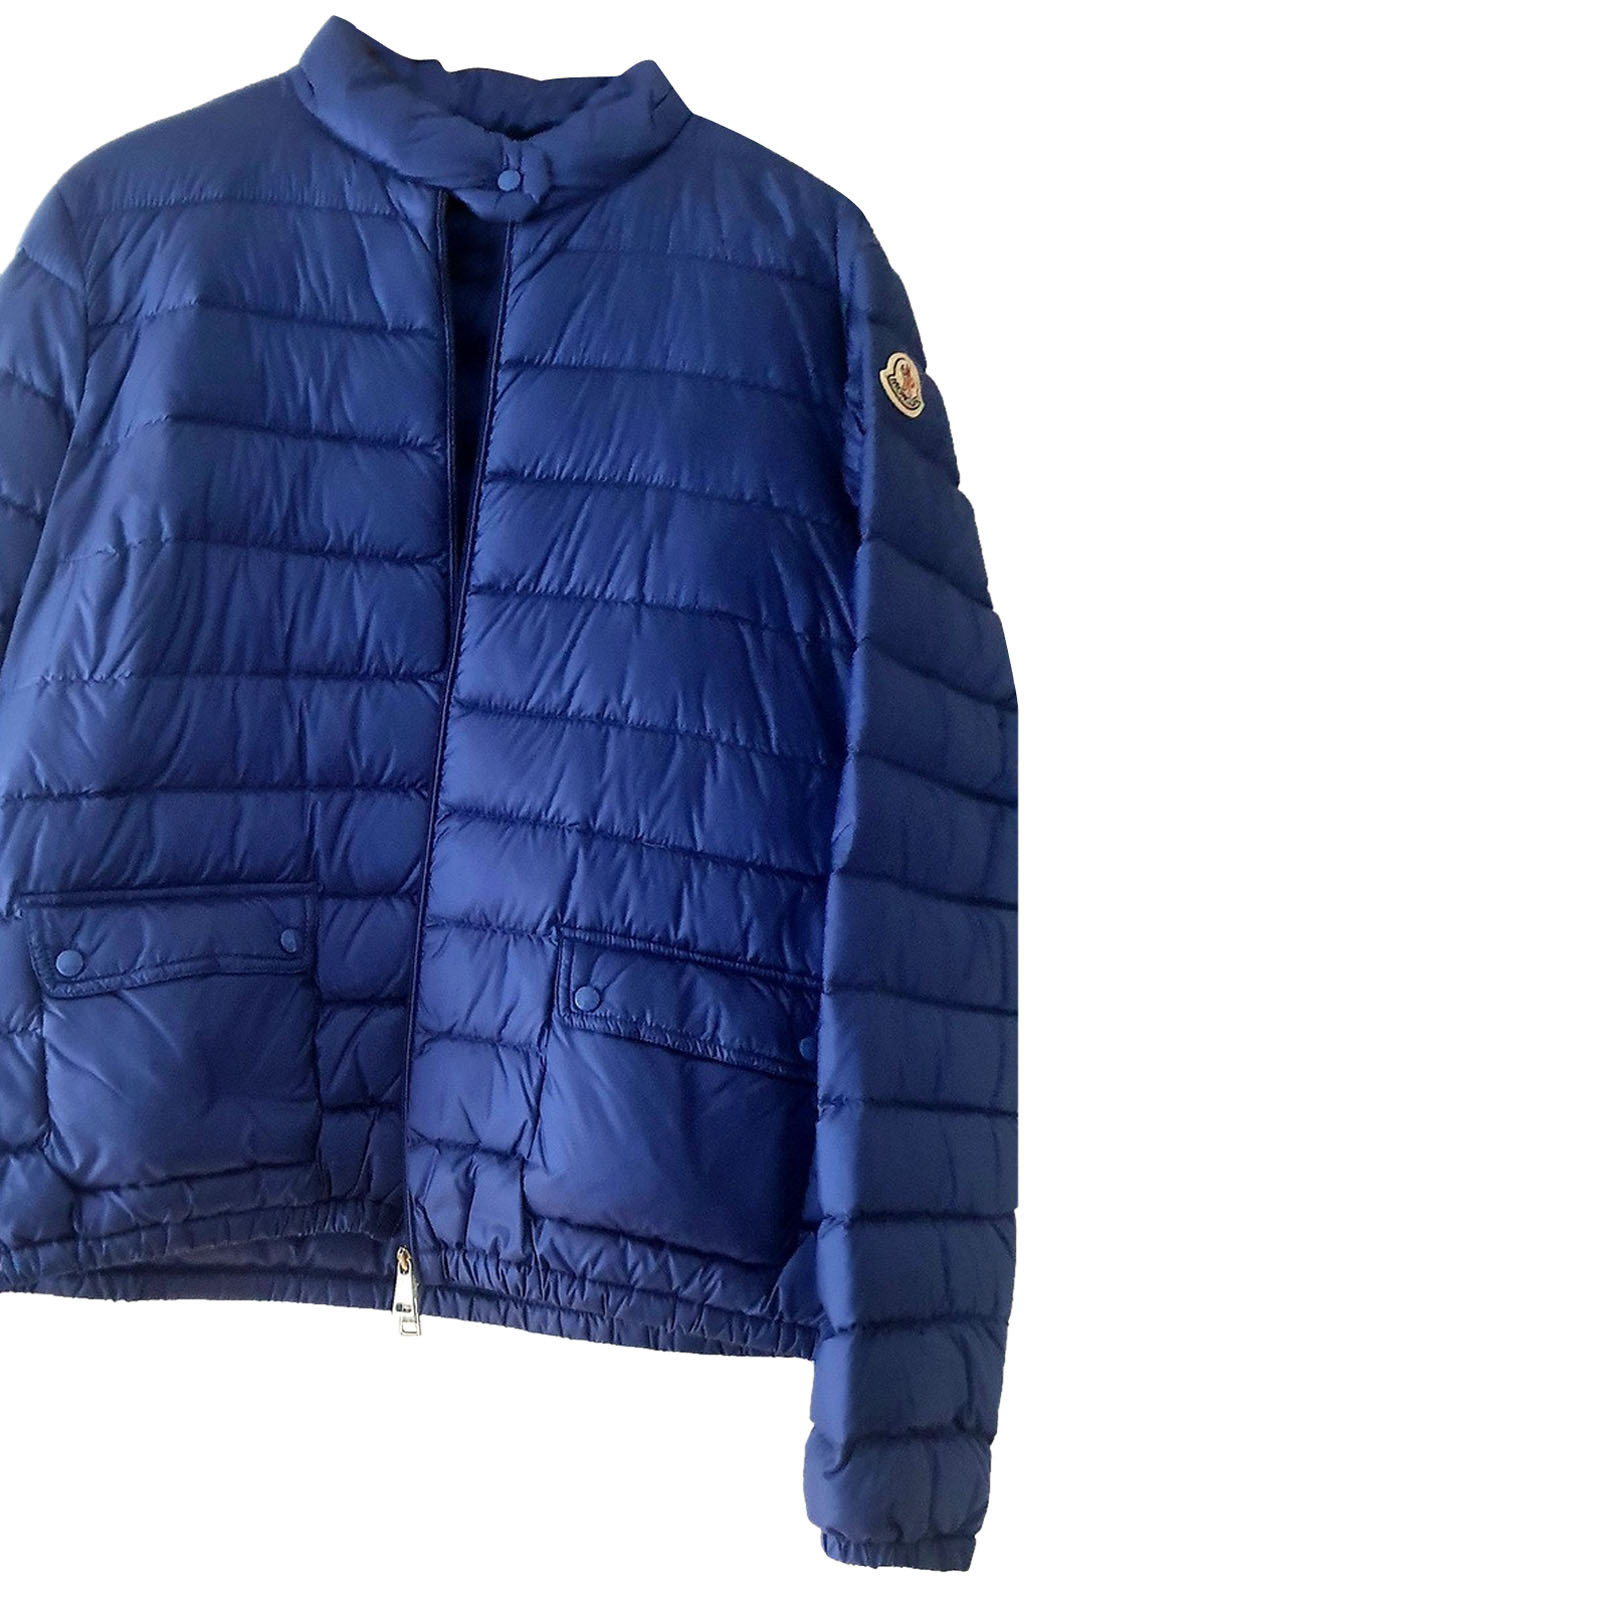 MONCLER Women's Jacke/Mantel in Blau Size: DE 44